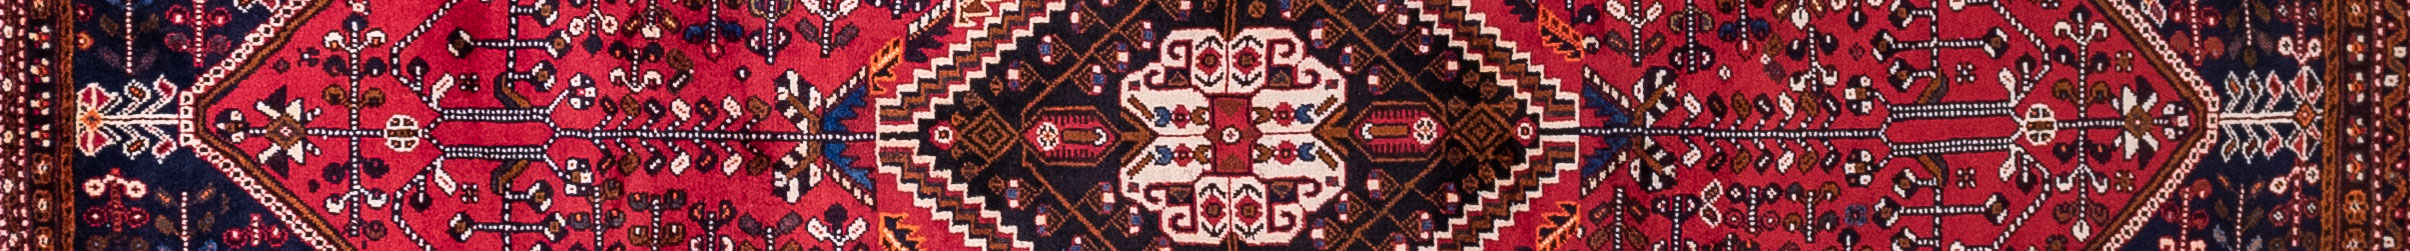 Shiraz Persian Carpet Rug N1Carpet Canada Montreal Tapis Persan 990